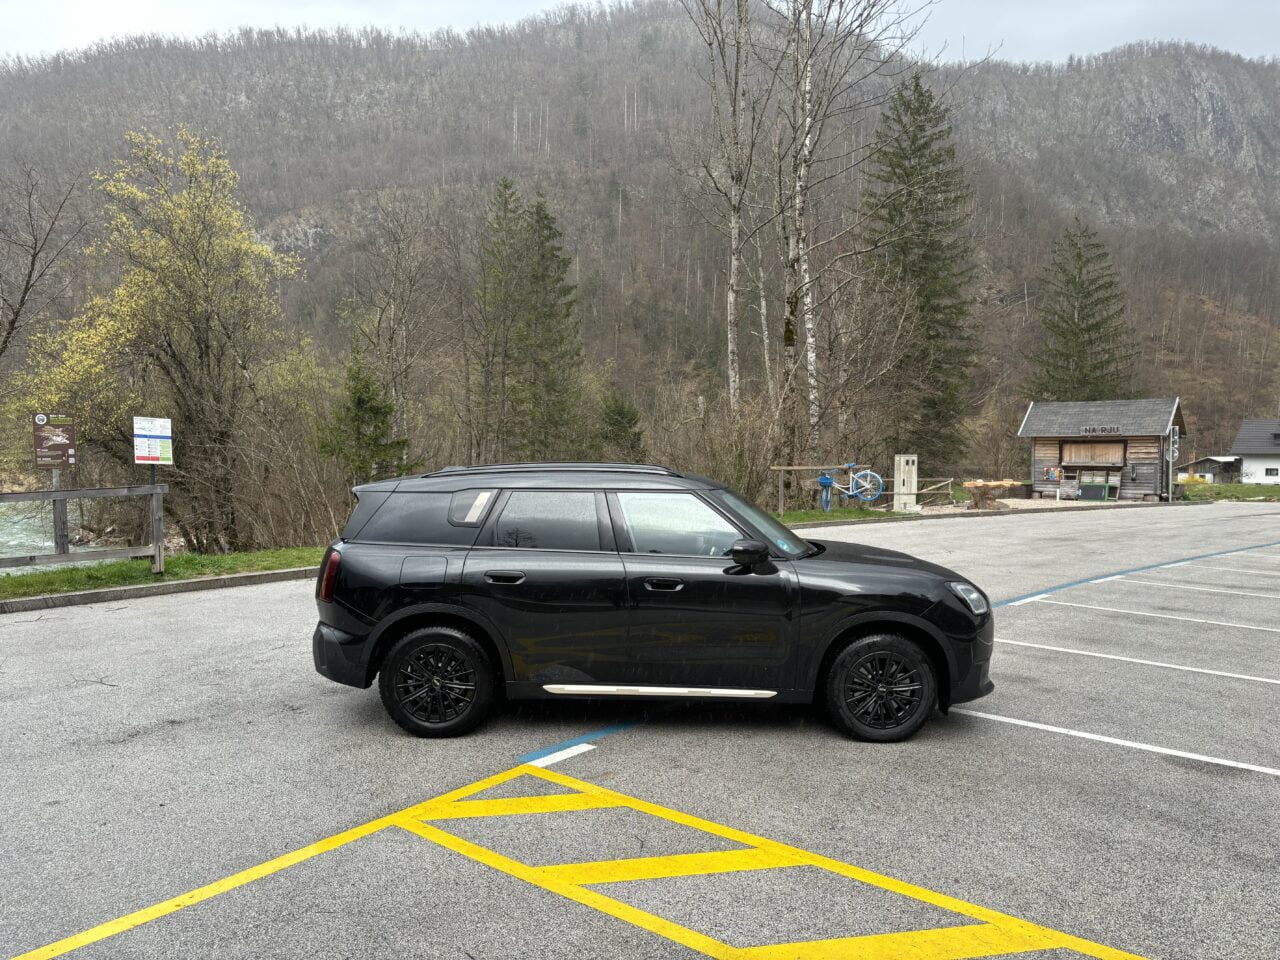 Czarny SUV zaparkowany na pustym parkingu z widokiem na góry i mały drewniany budynek obok rzeki.